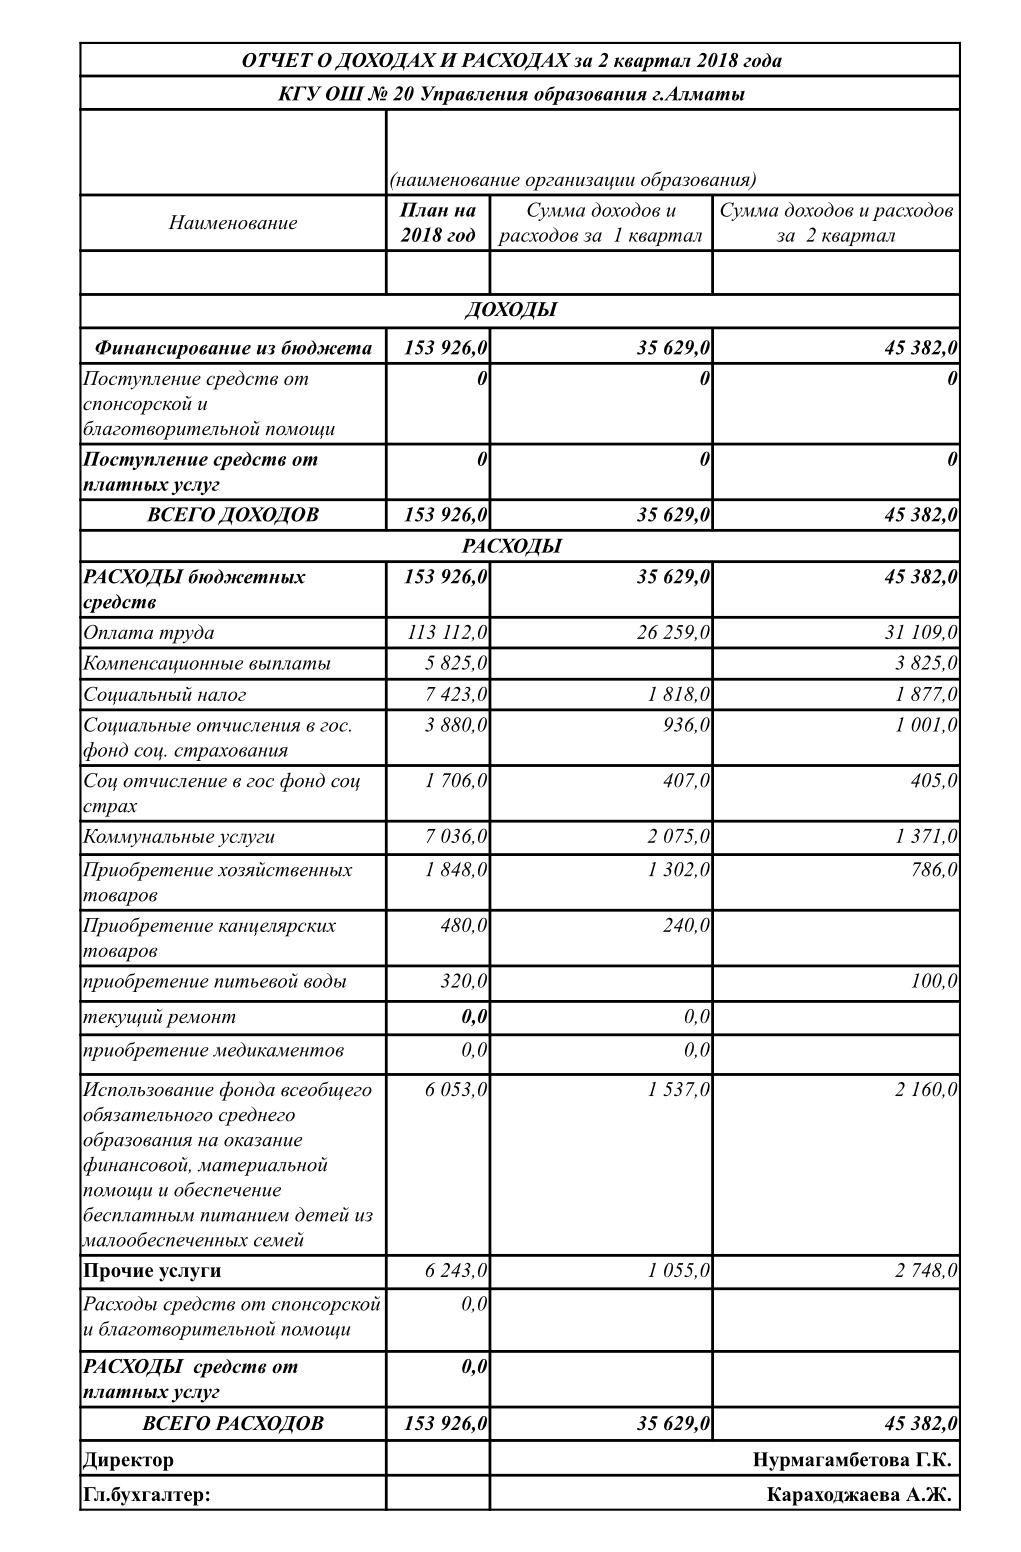 Отчет о доходах и расходах за 2кв 2018г